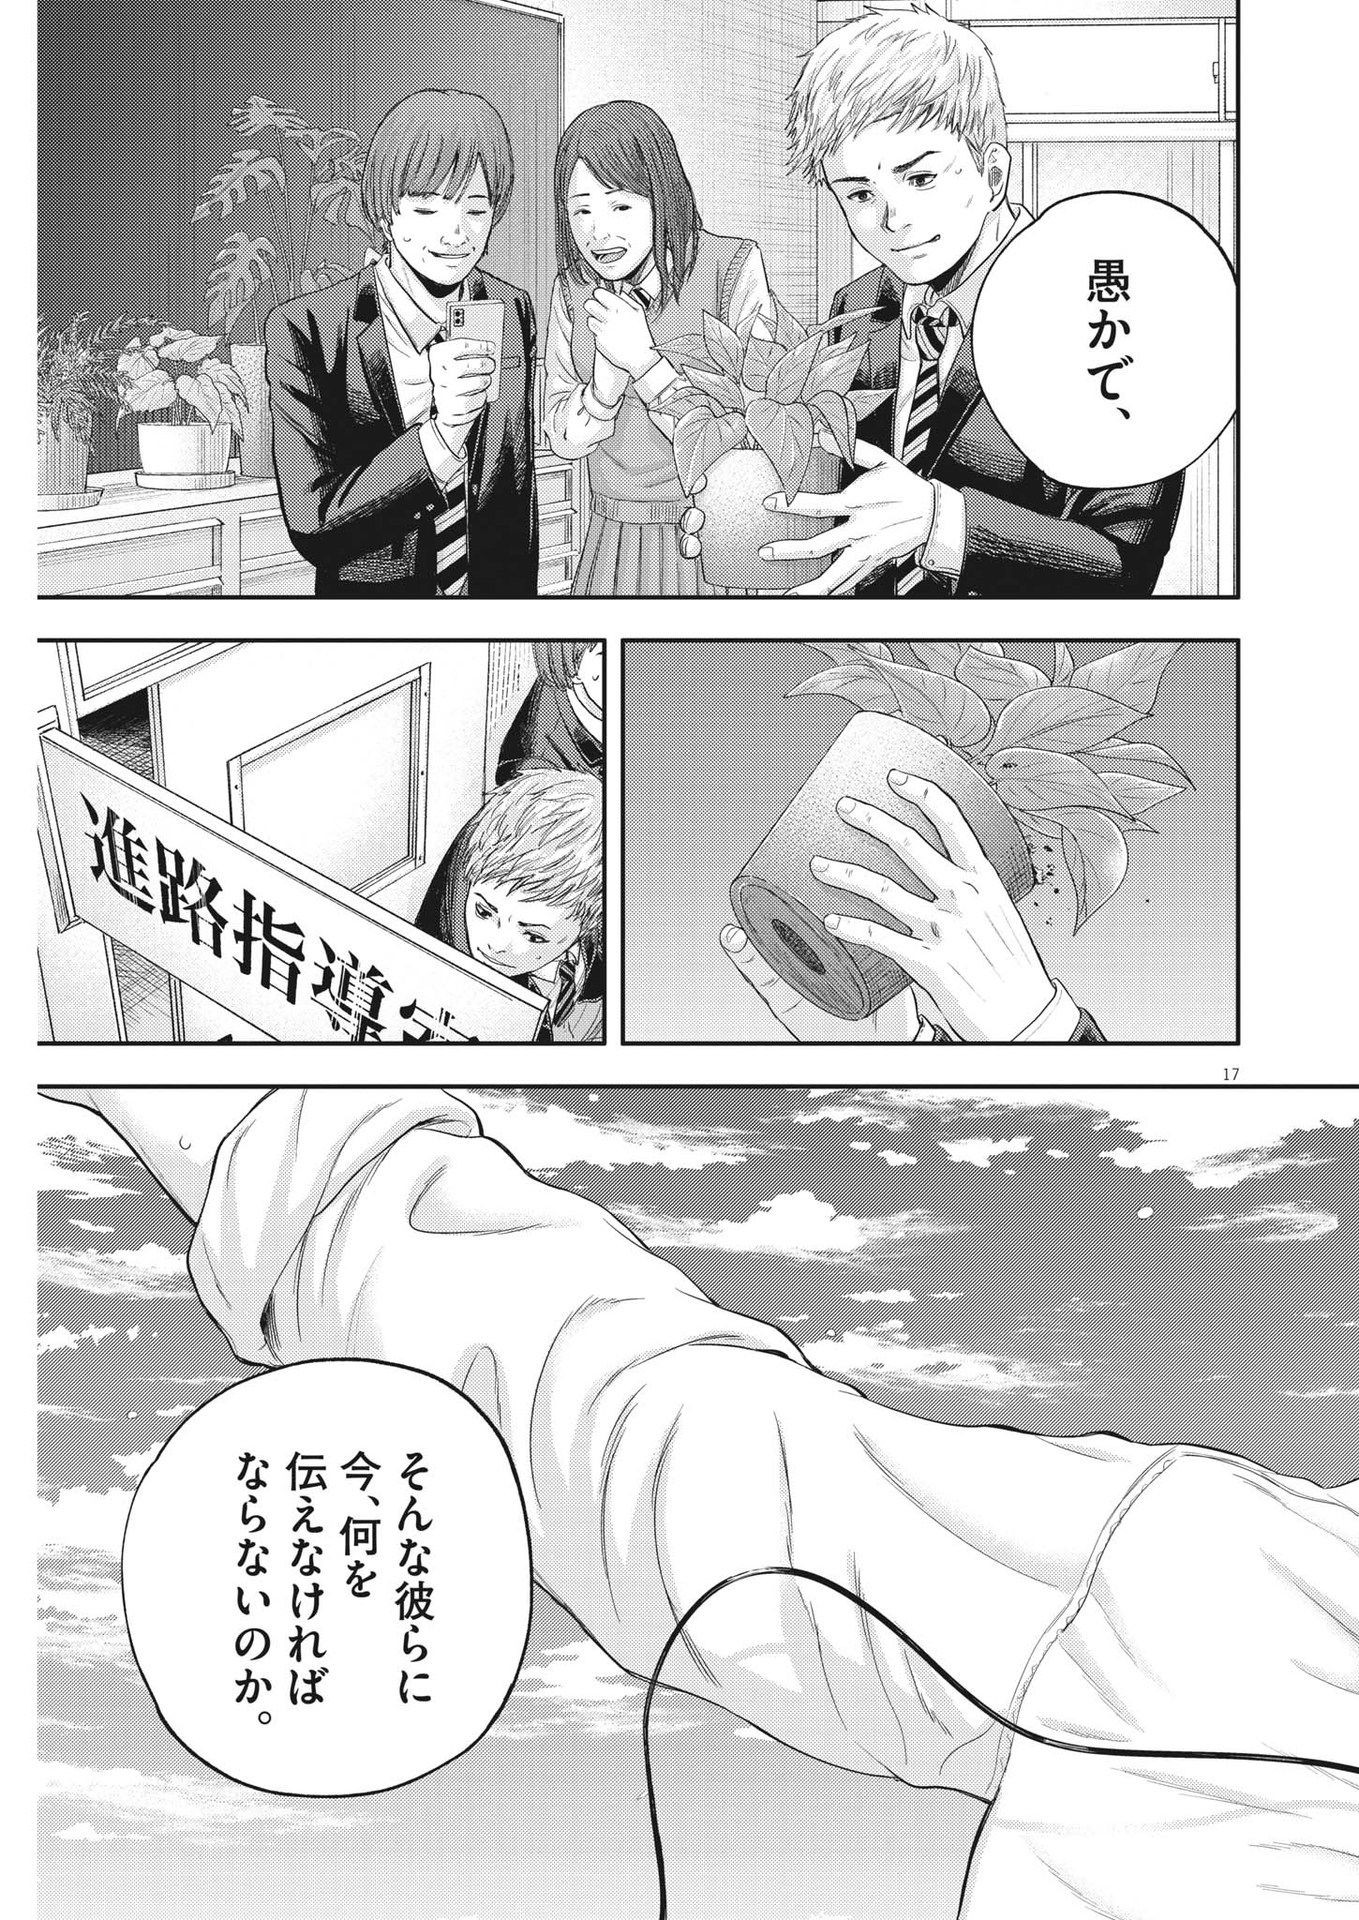 Yumenashi-sensei no Shinroshidou - Chapter 6 - Page 17